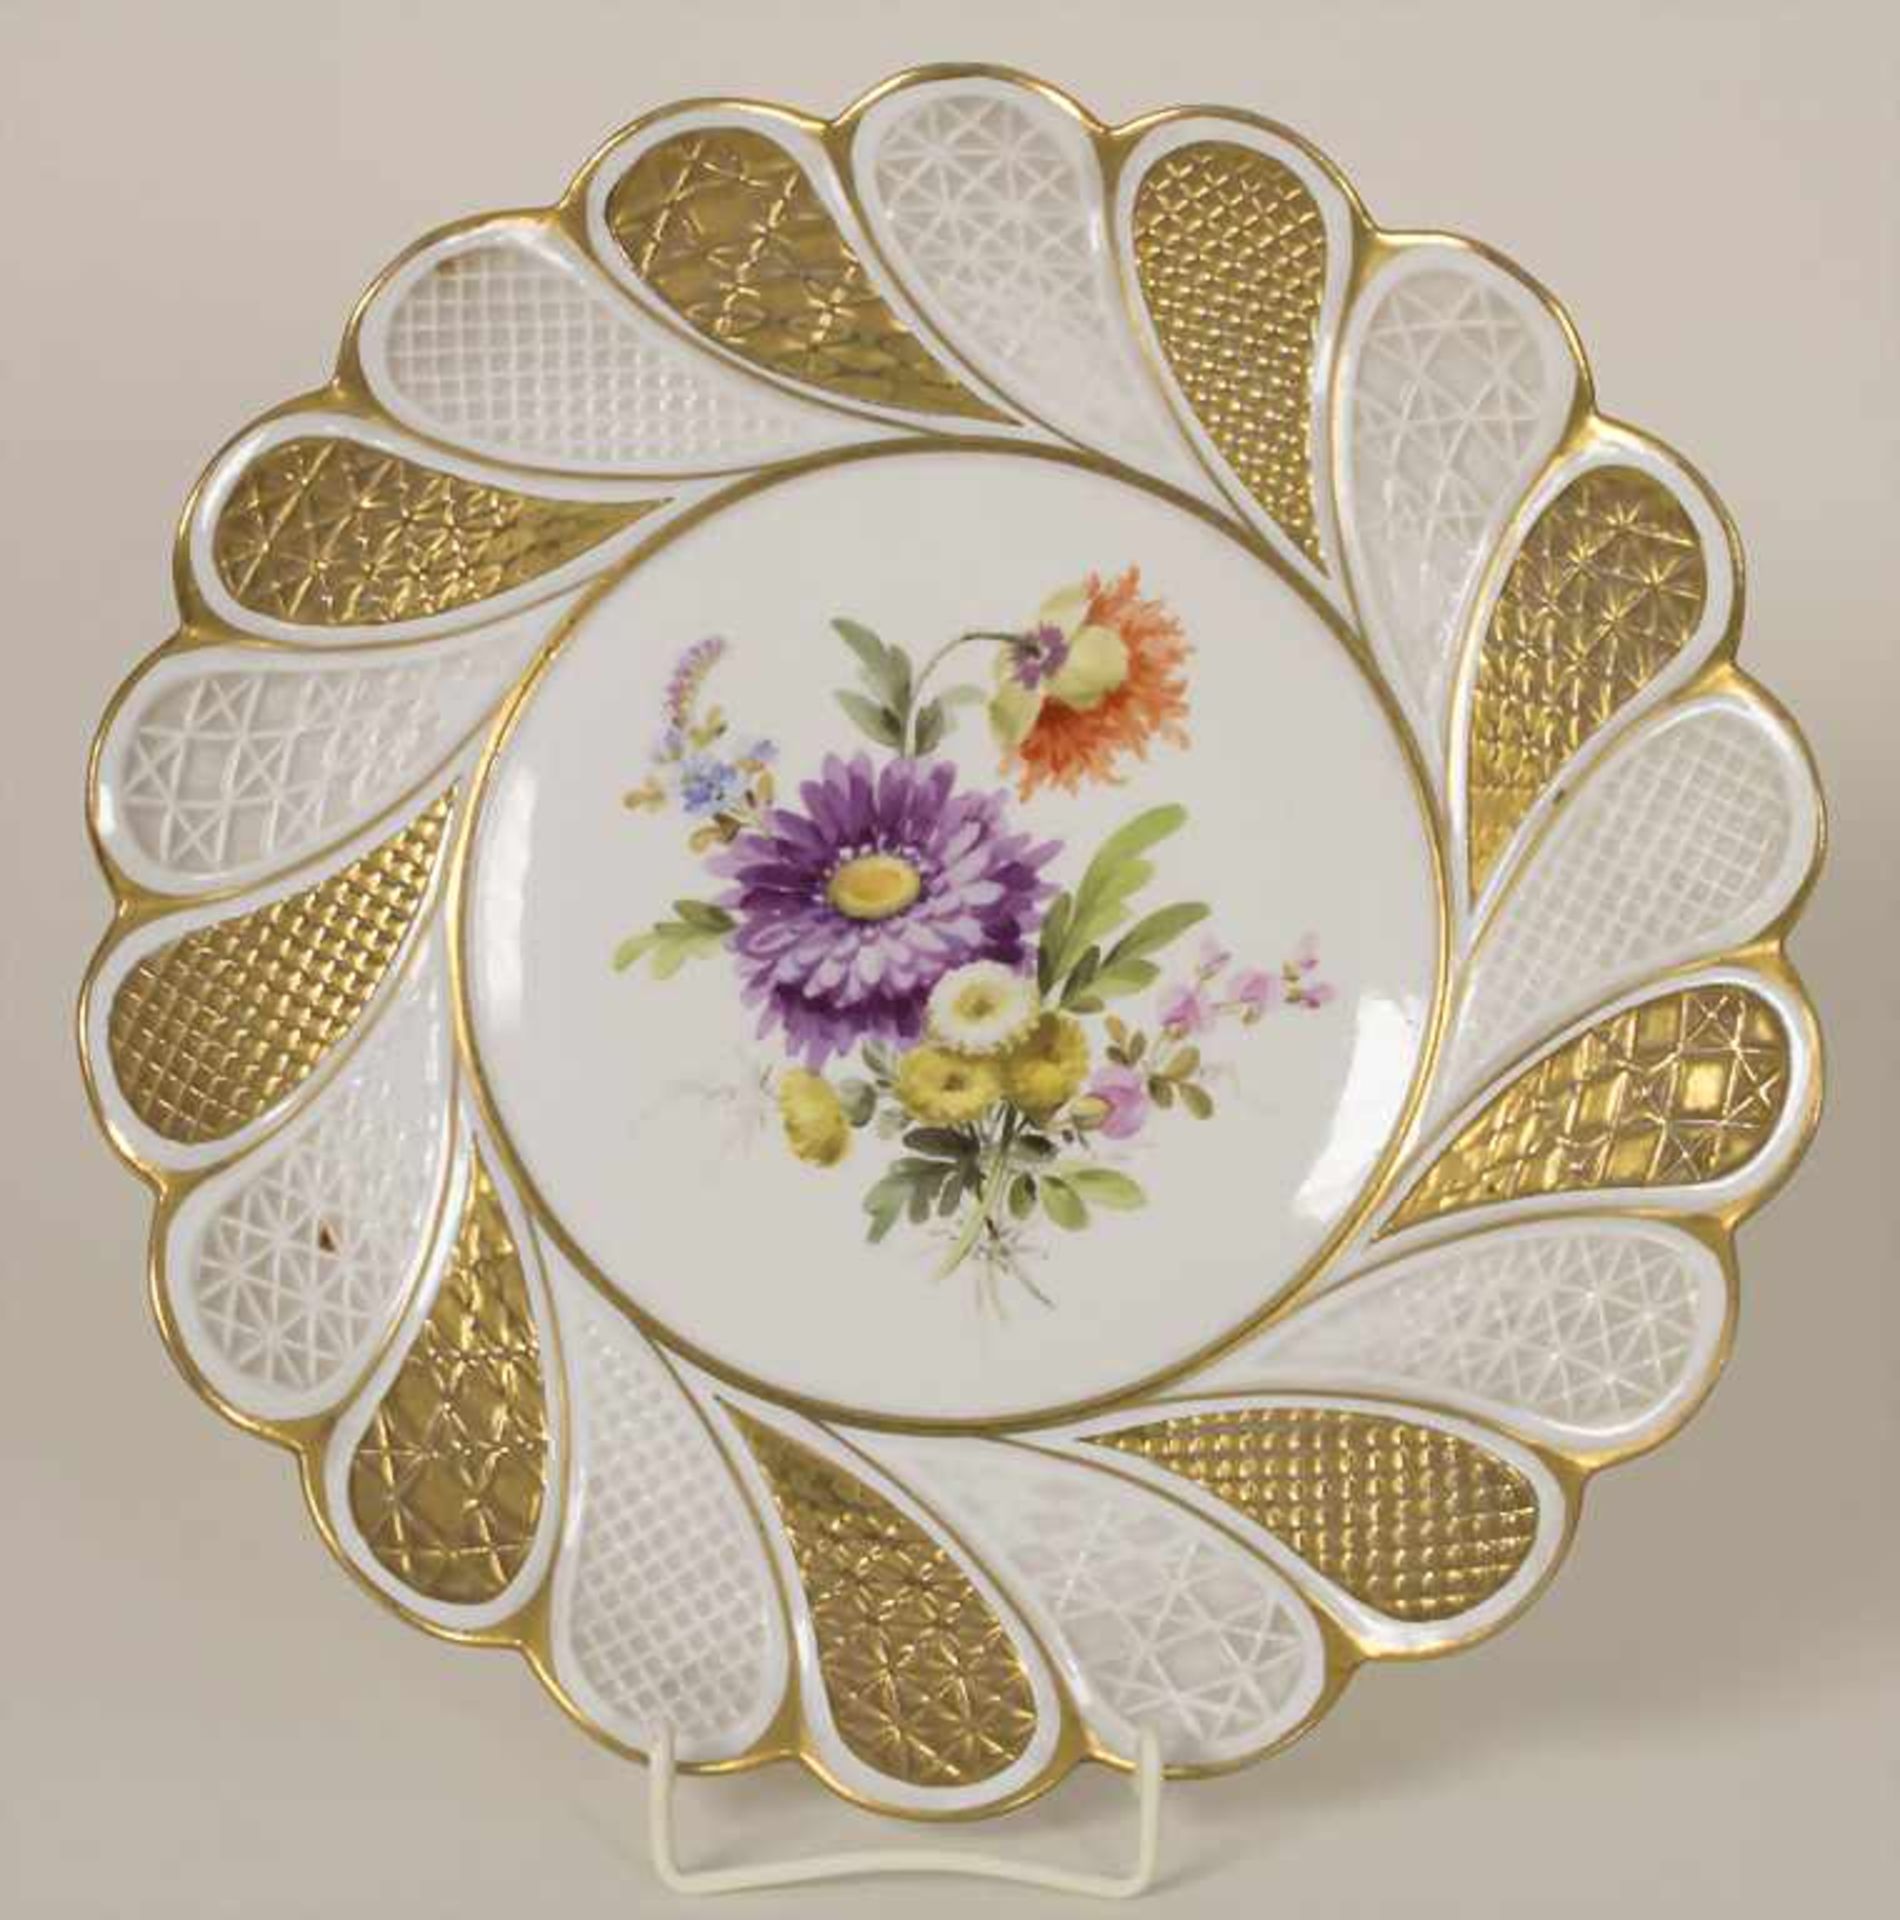 Fächerteller mit Blumenmalerei / A fan shaped plate with flowers, Meissen, 1860-1924Material: